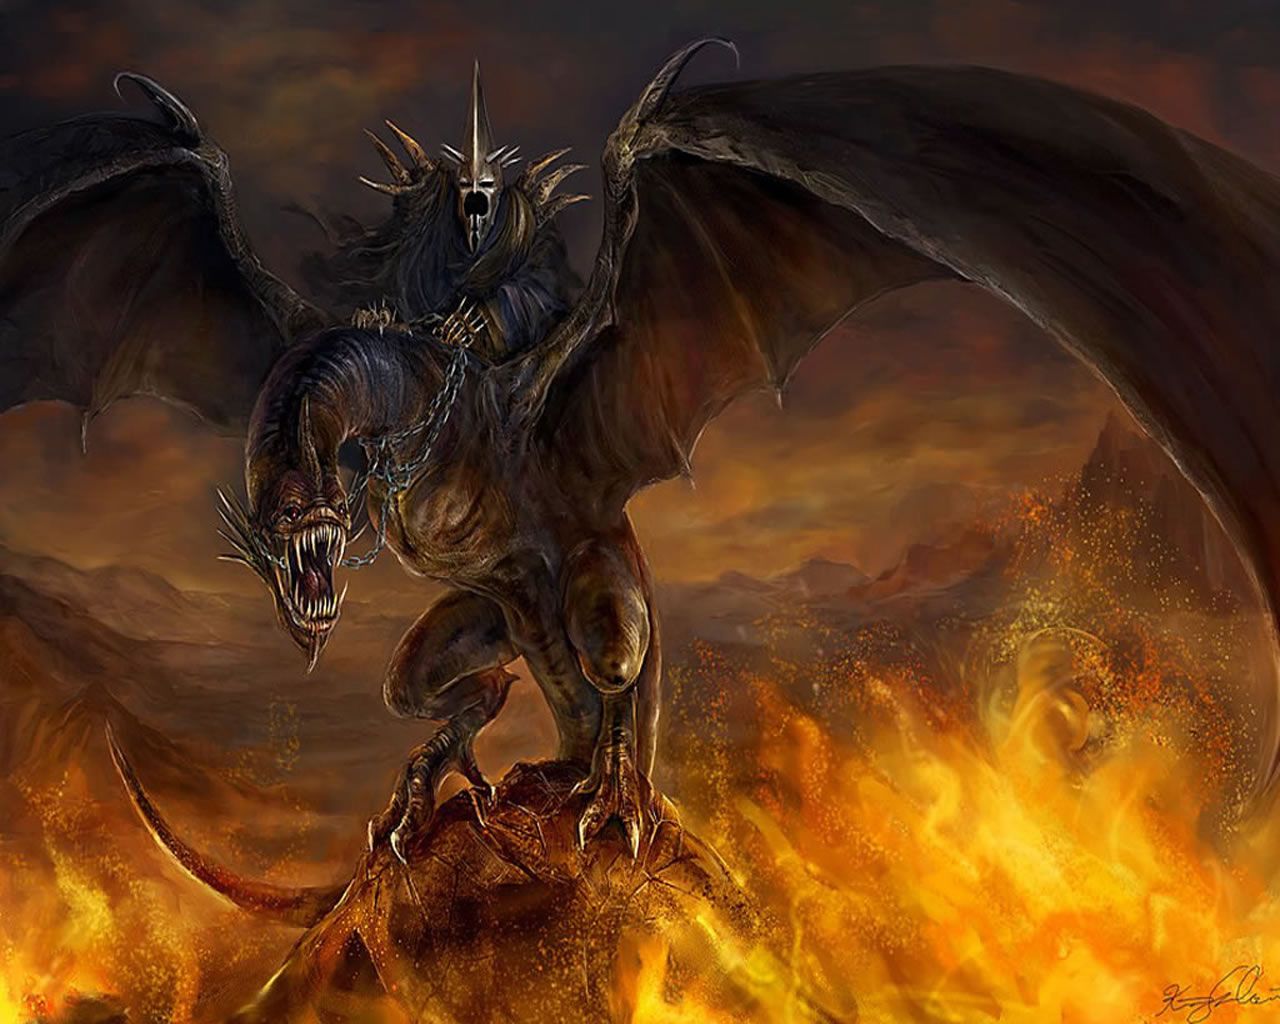 le seigneur des anneaux fond d'écran hd,dragon,oeuvre de cg,démon,mythologie,créature mythique